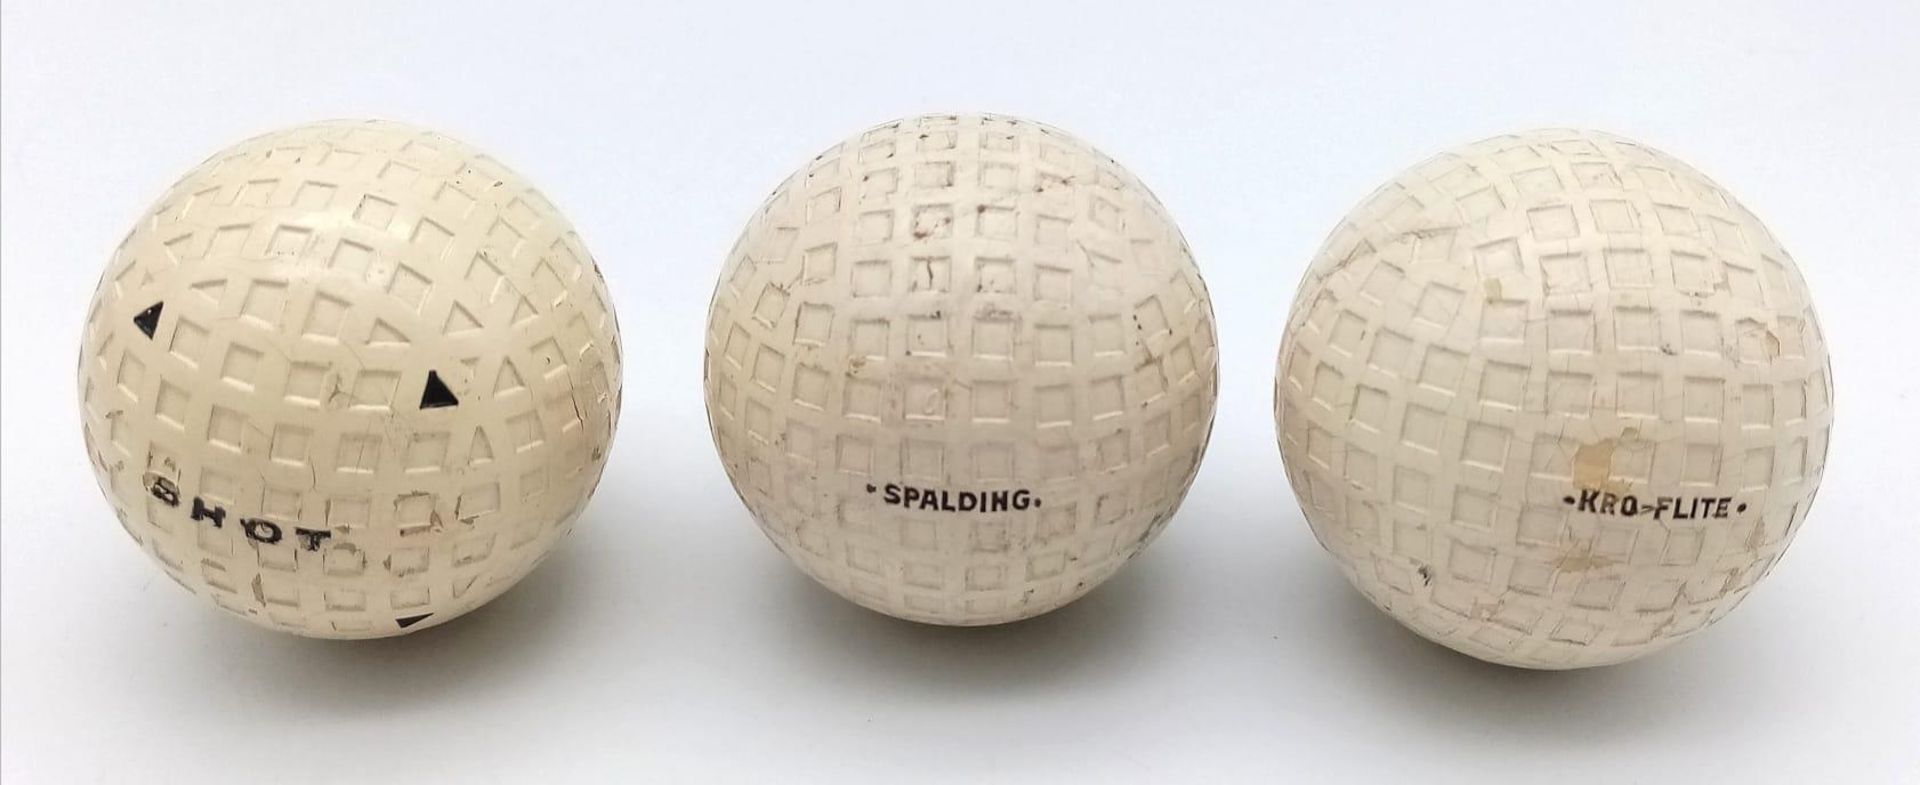 Three Vintage Spalding Kro-Flite Golf Balls in Original Packaging. - Image 2 of 5